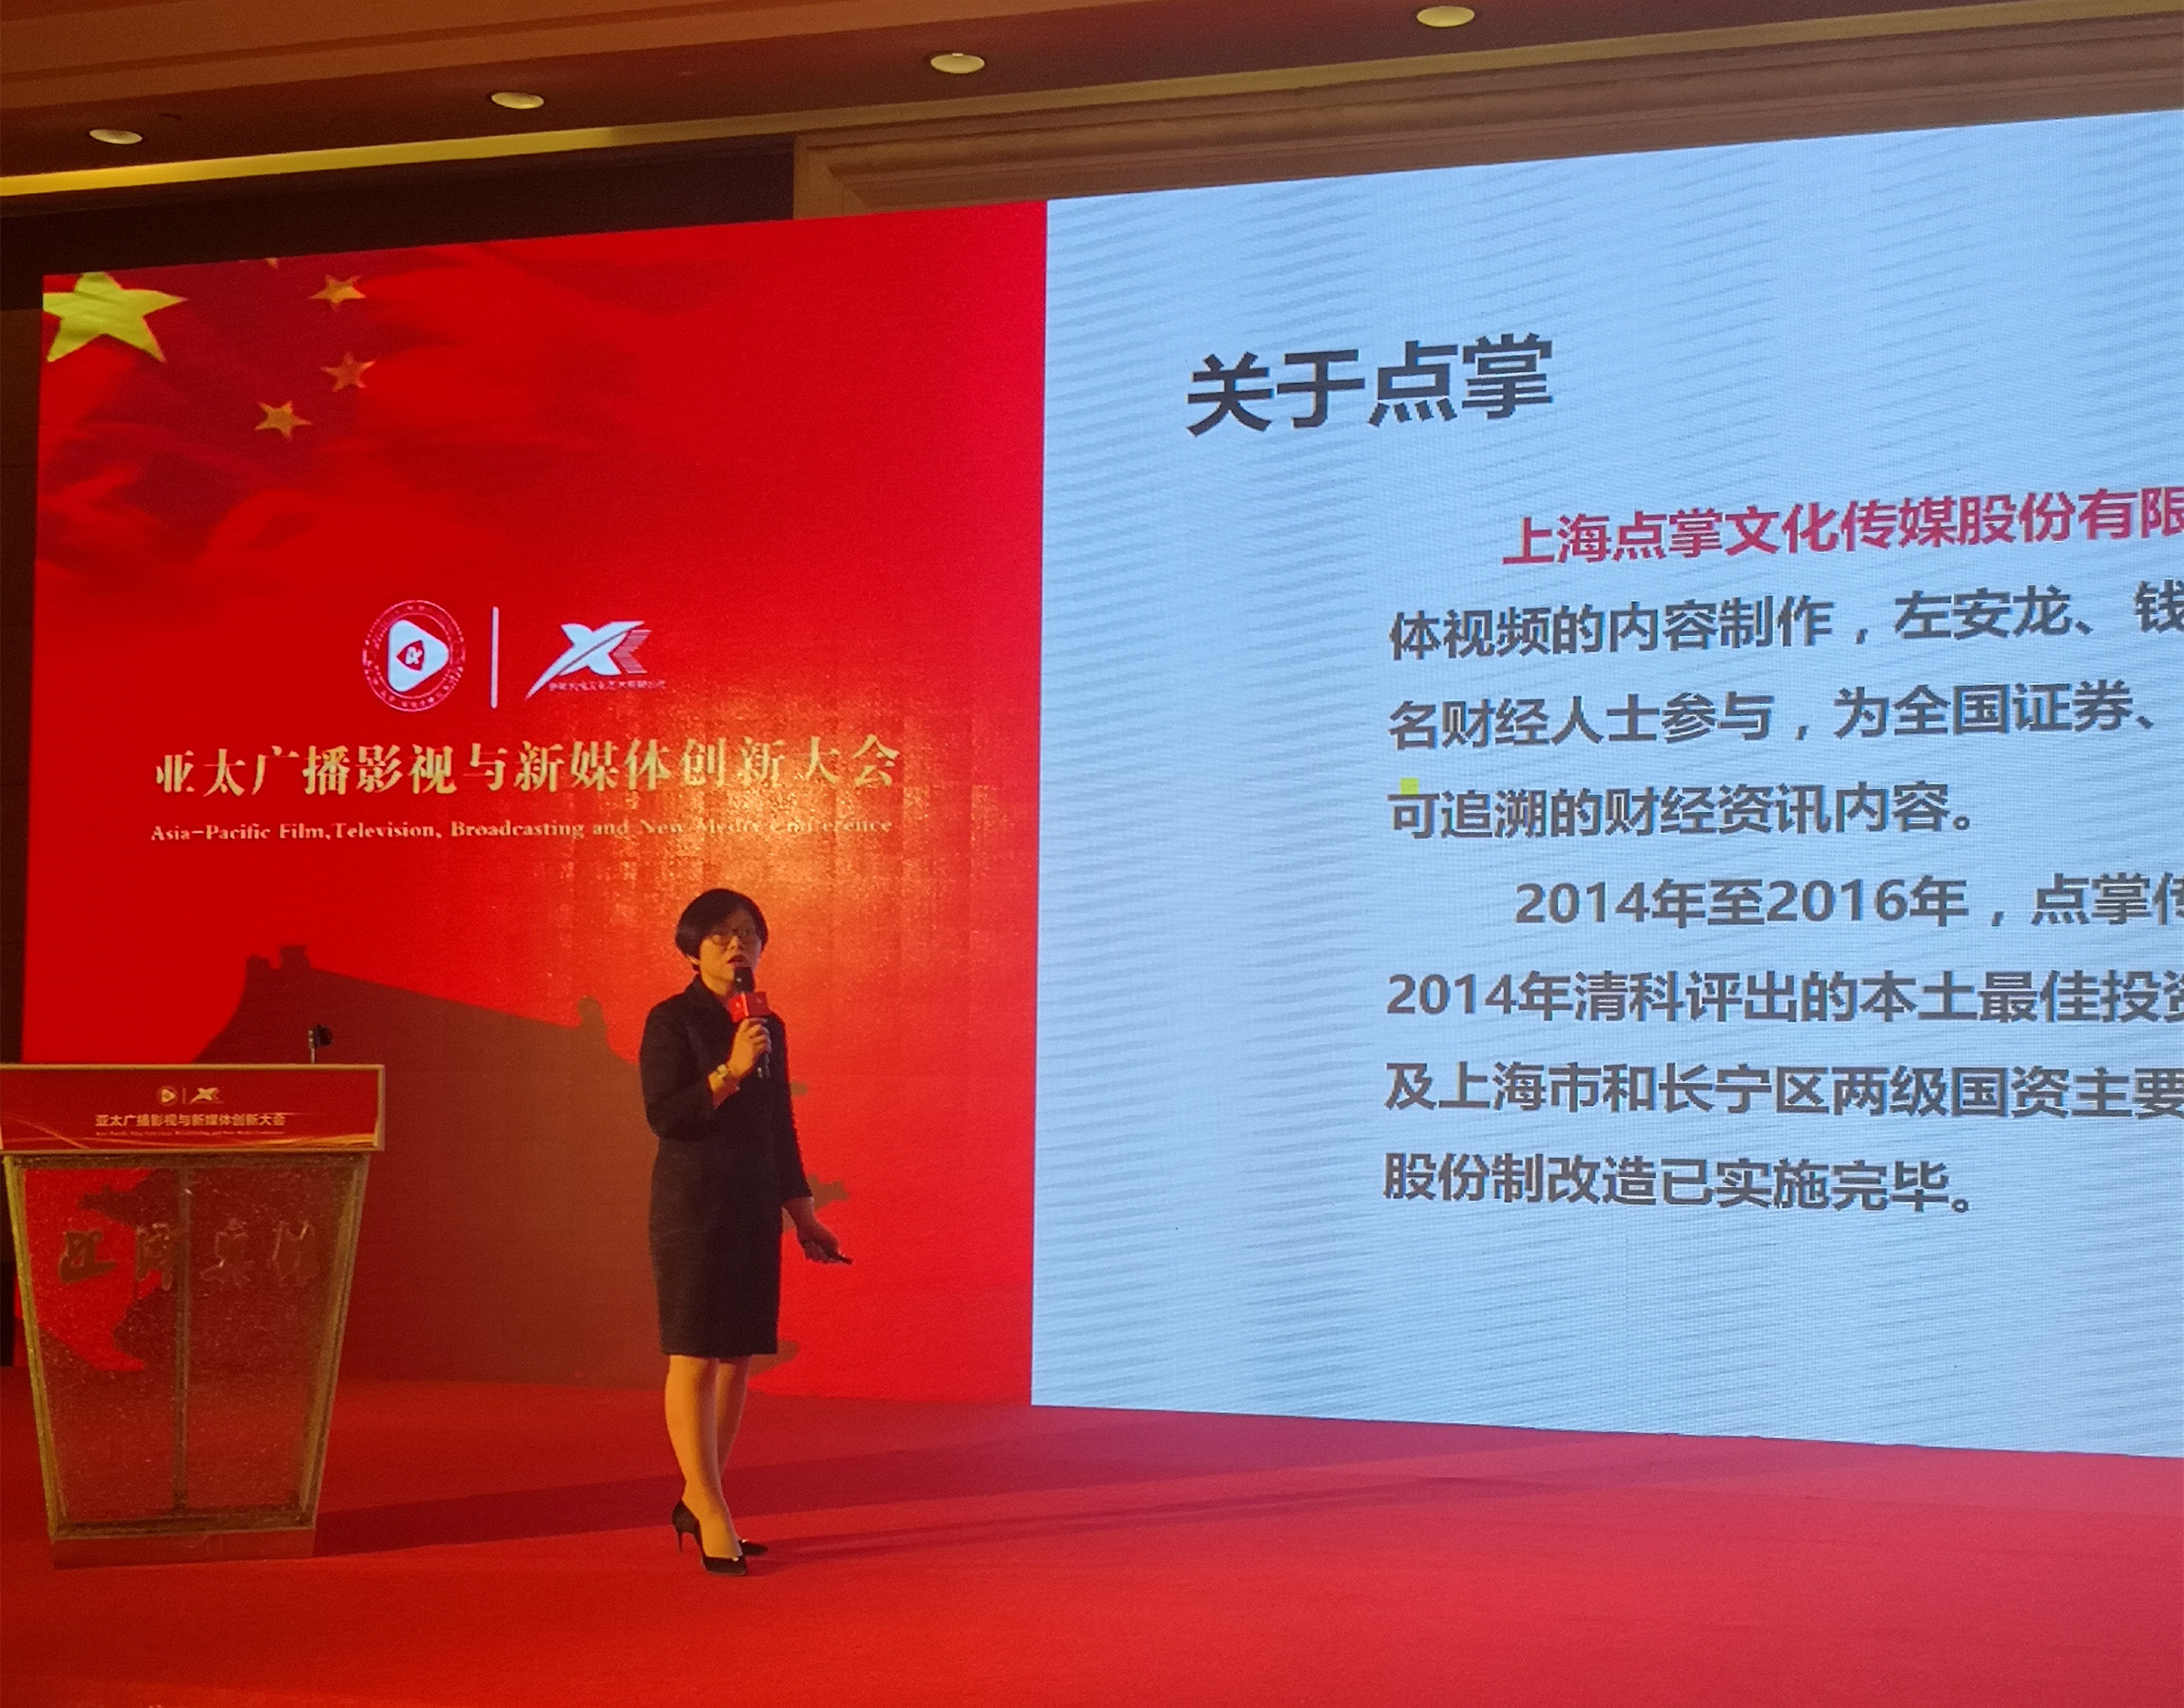 上海点掌文化传媒股份有限公司荣获“亚太地区创新力媒体机构”